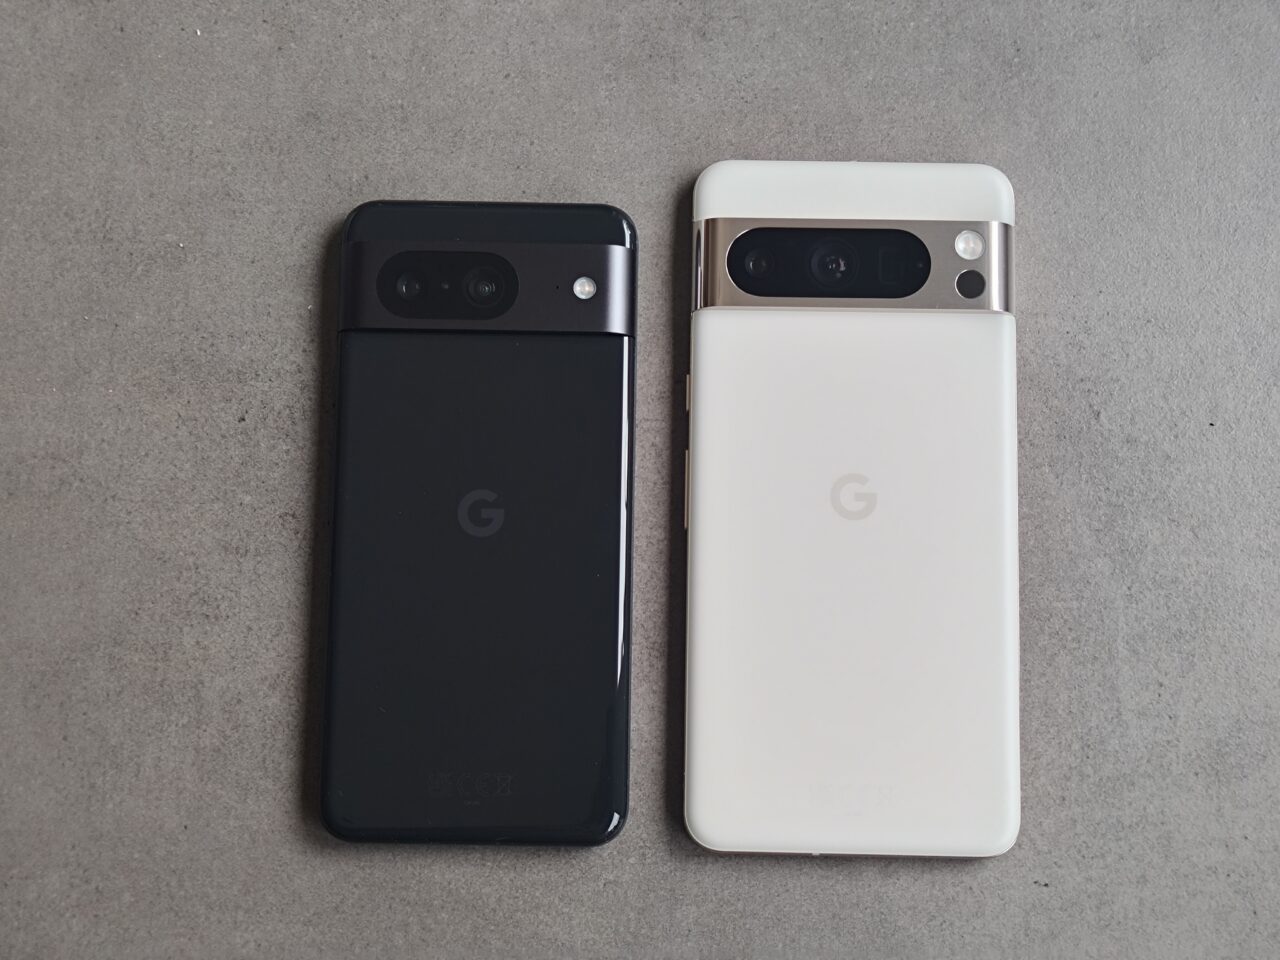 Dwa smartfony Google Pixel leżące tyłem na szarym tle; jeden czarny, a drugi biały.